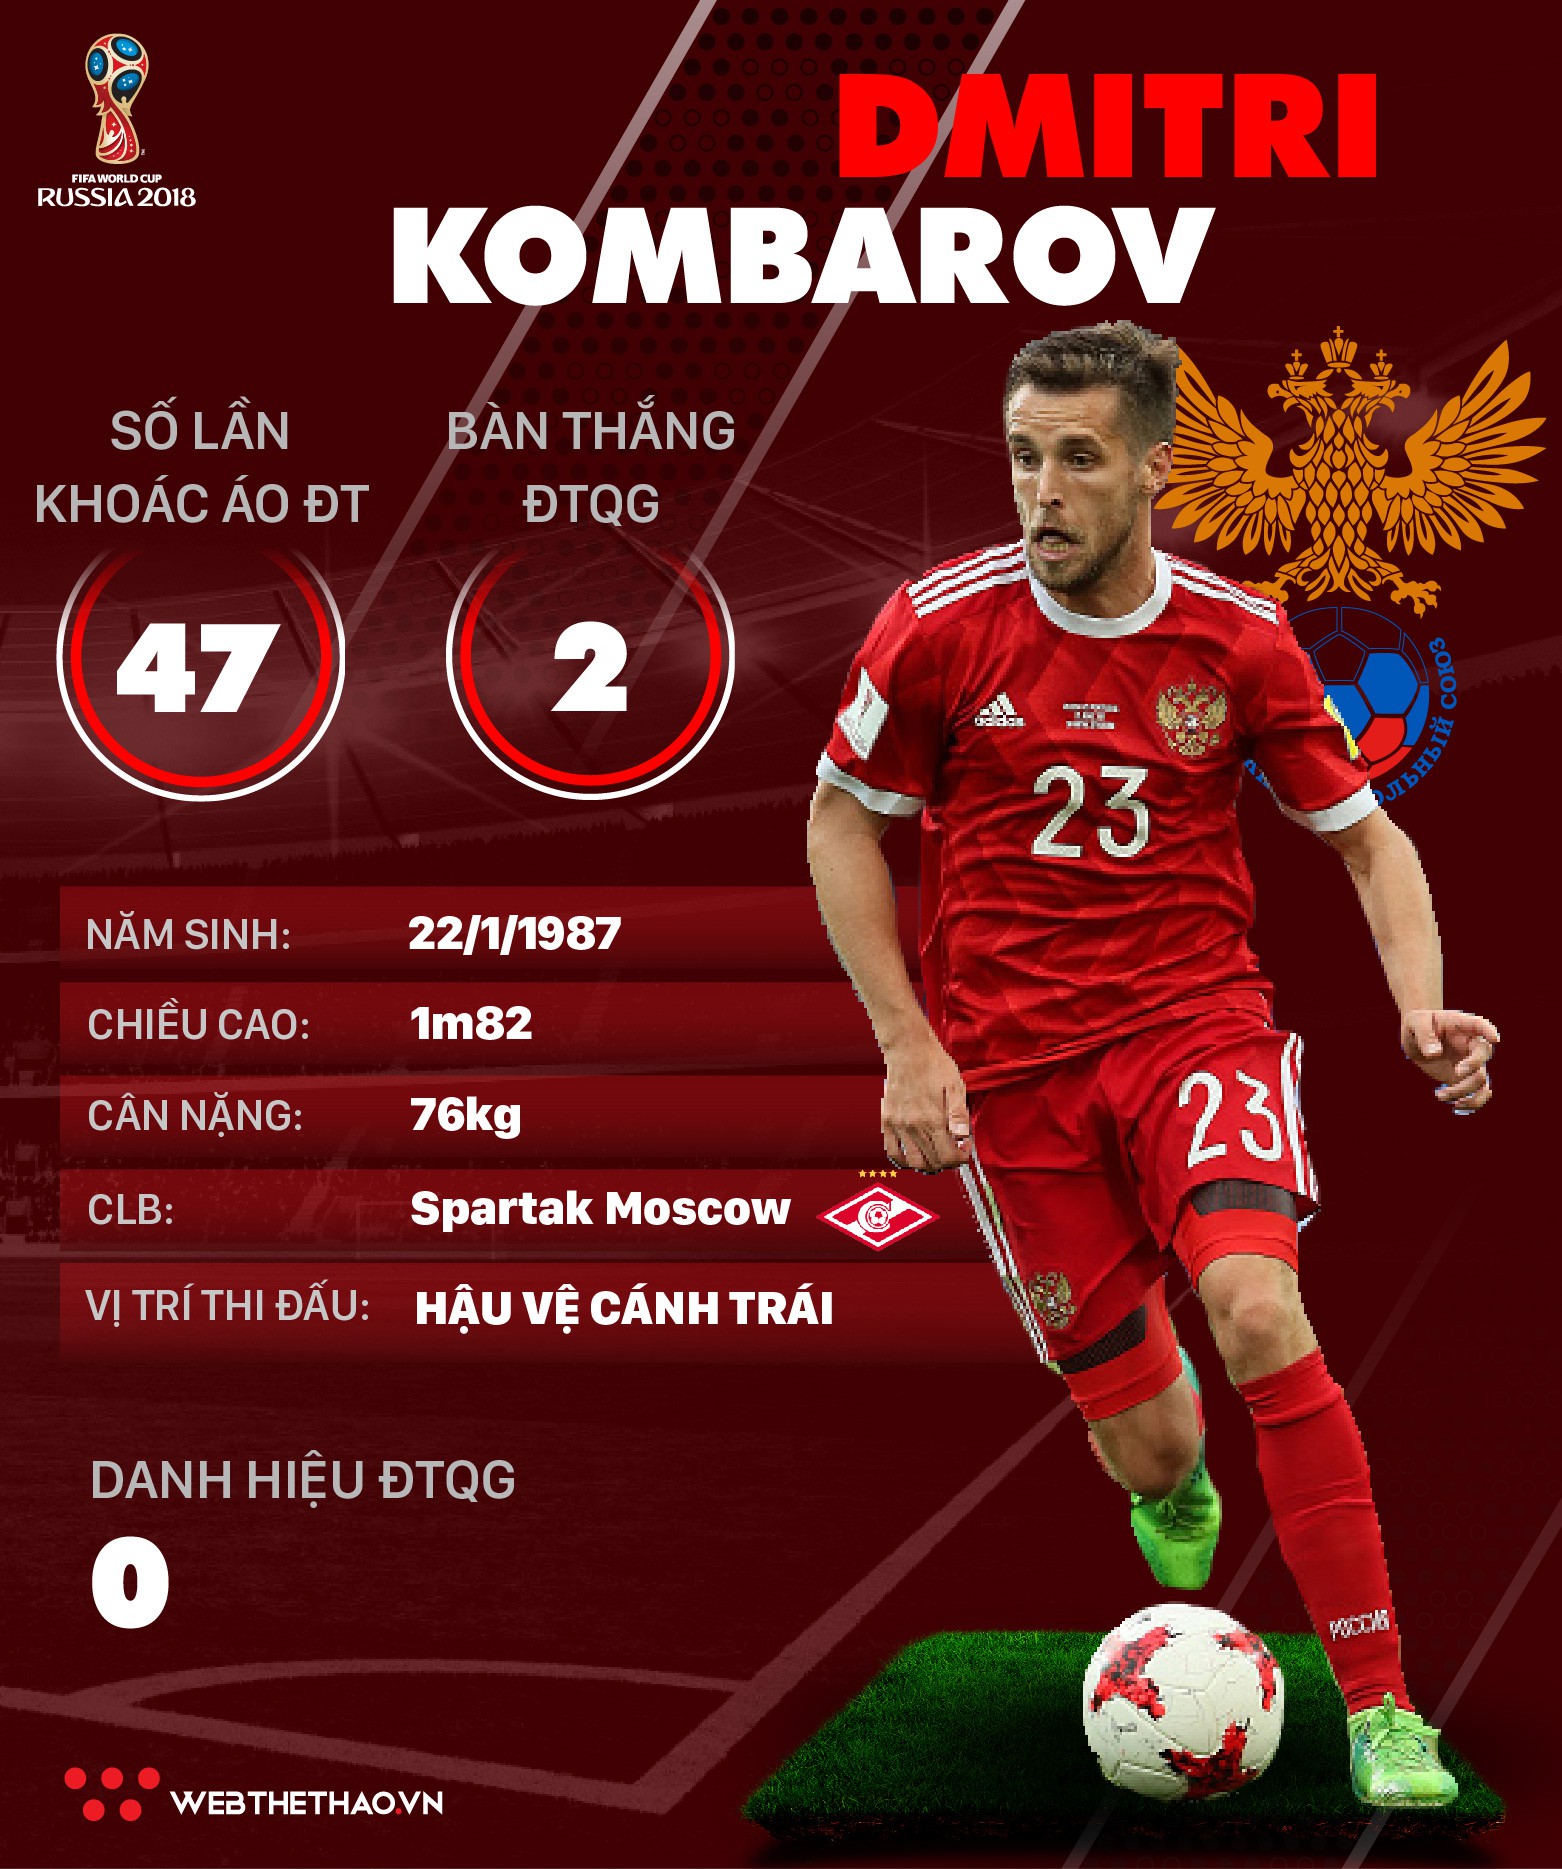 Thông tin cầu thủ Dimitri Kombarov của ĐT Nga dự World Cup 2018 - Ảnh 1.